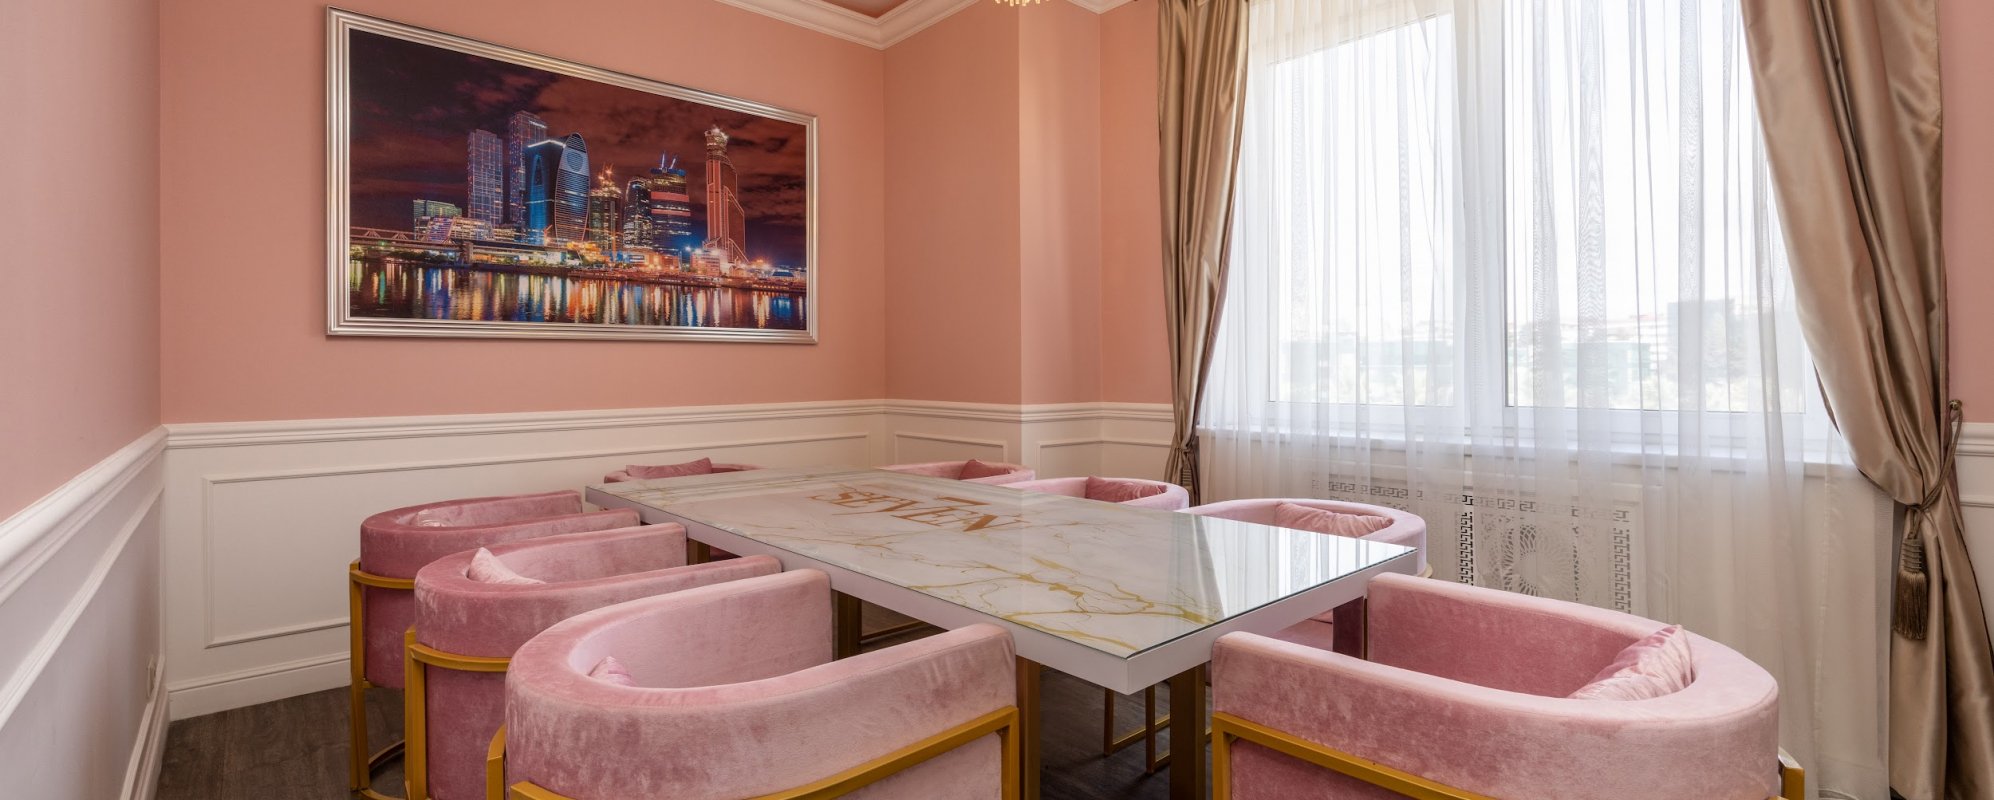 Фотографии комнаты для переговоров Переговорная комната Pink